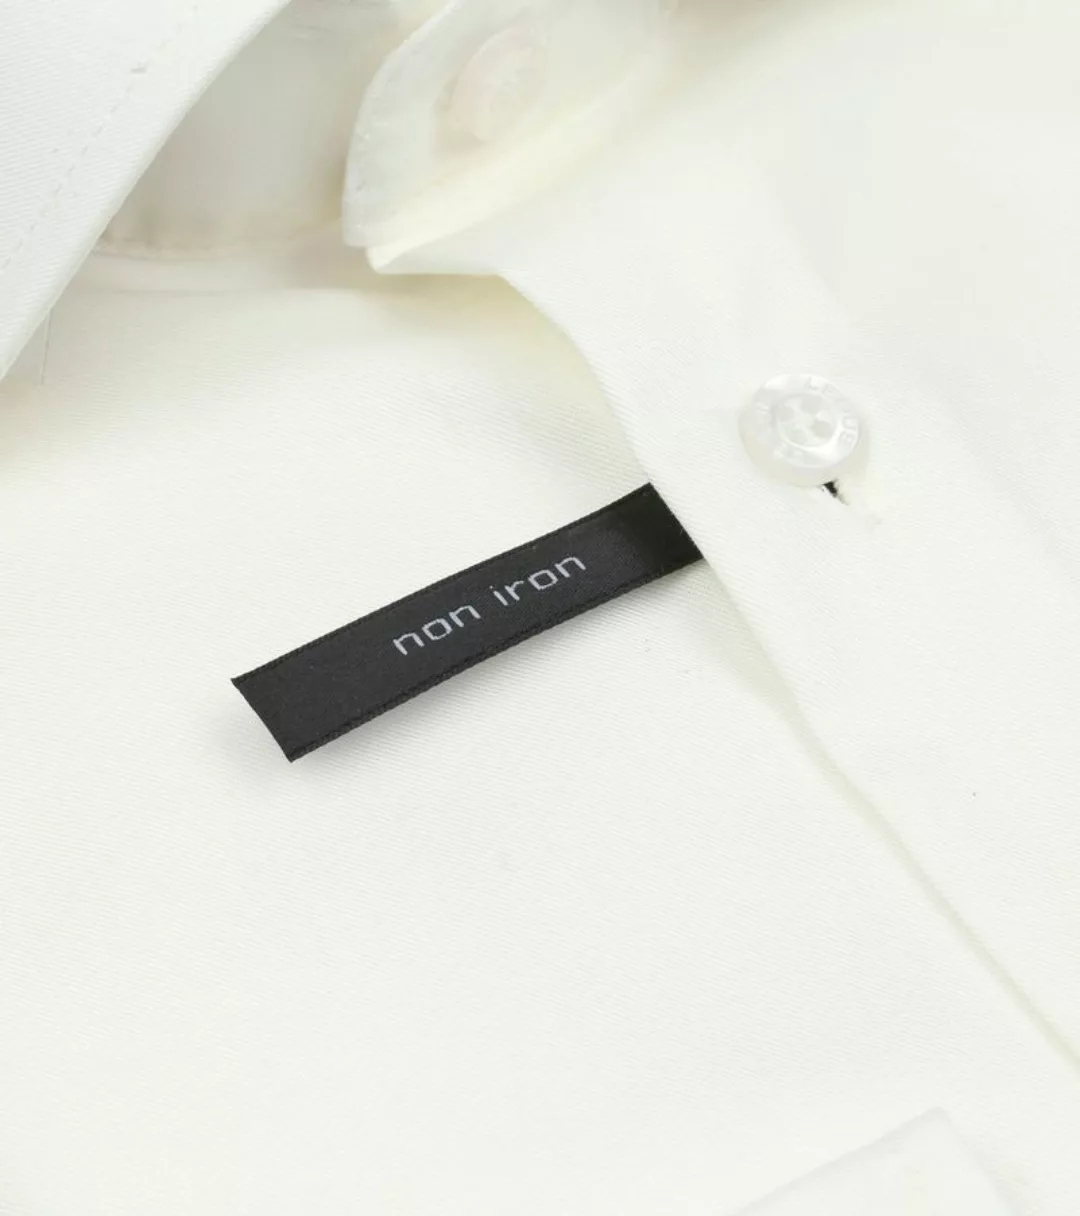 Ledub Hemd Off-White - Größe 42 günstig online kaufen